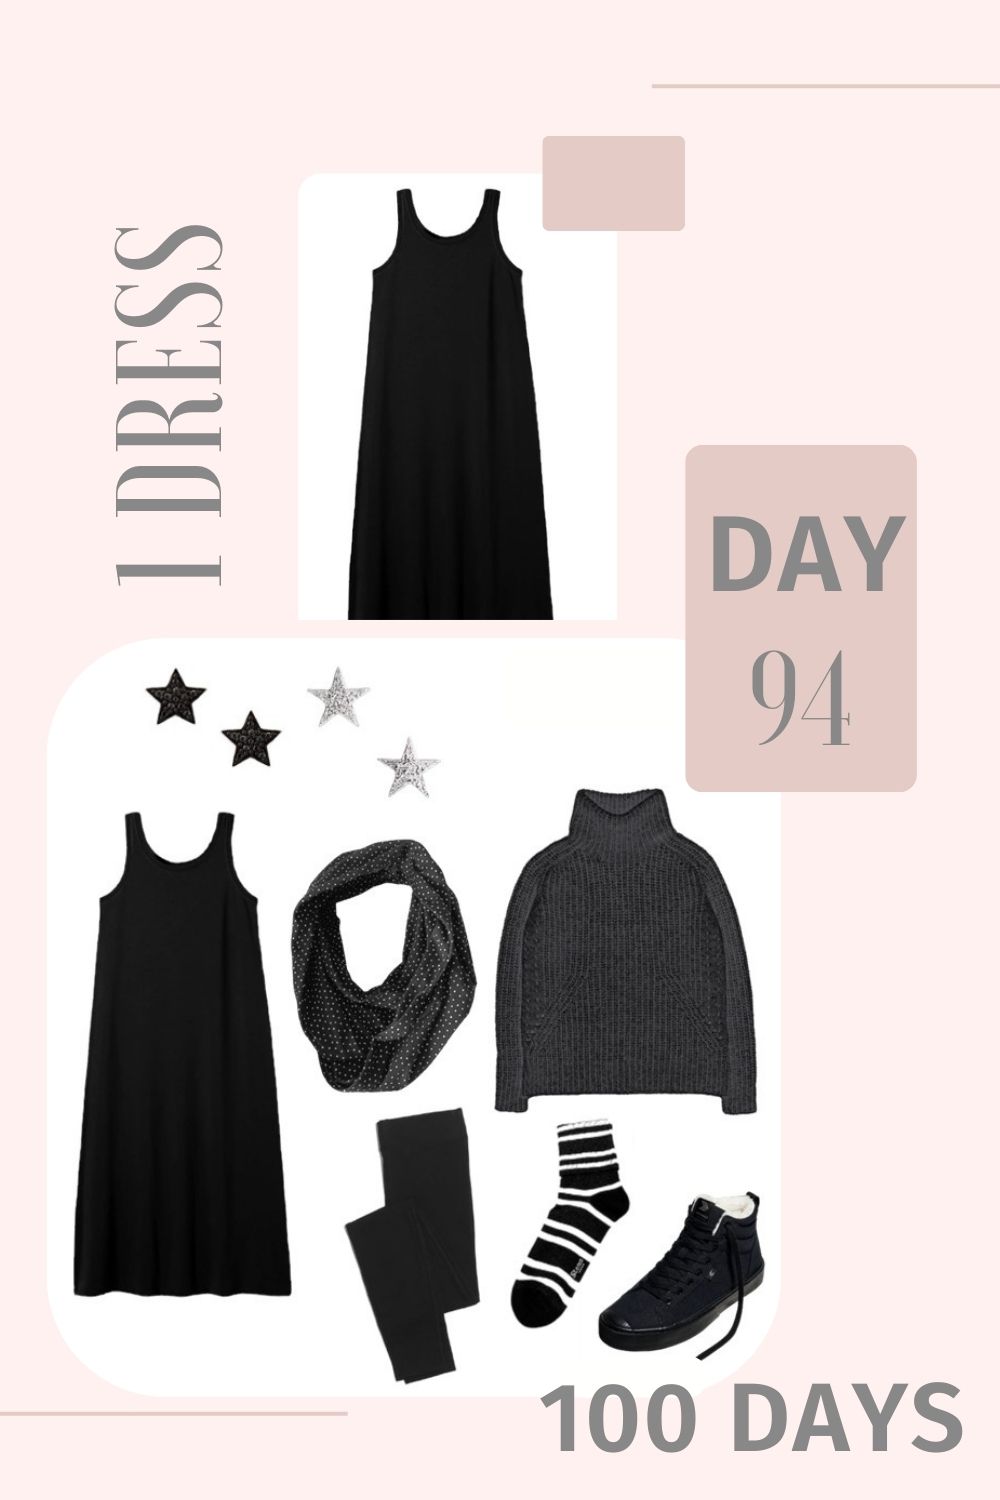 1 Dress 100 Days - Day 94